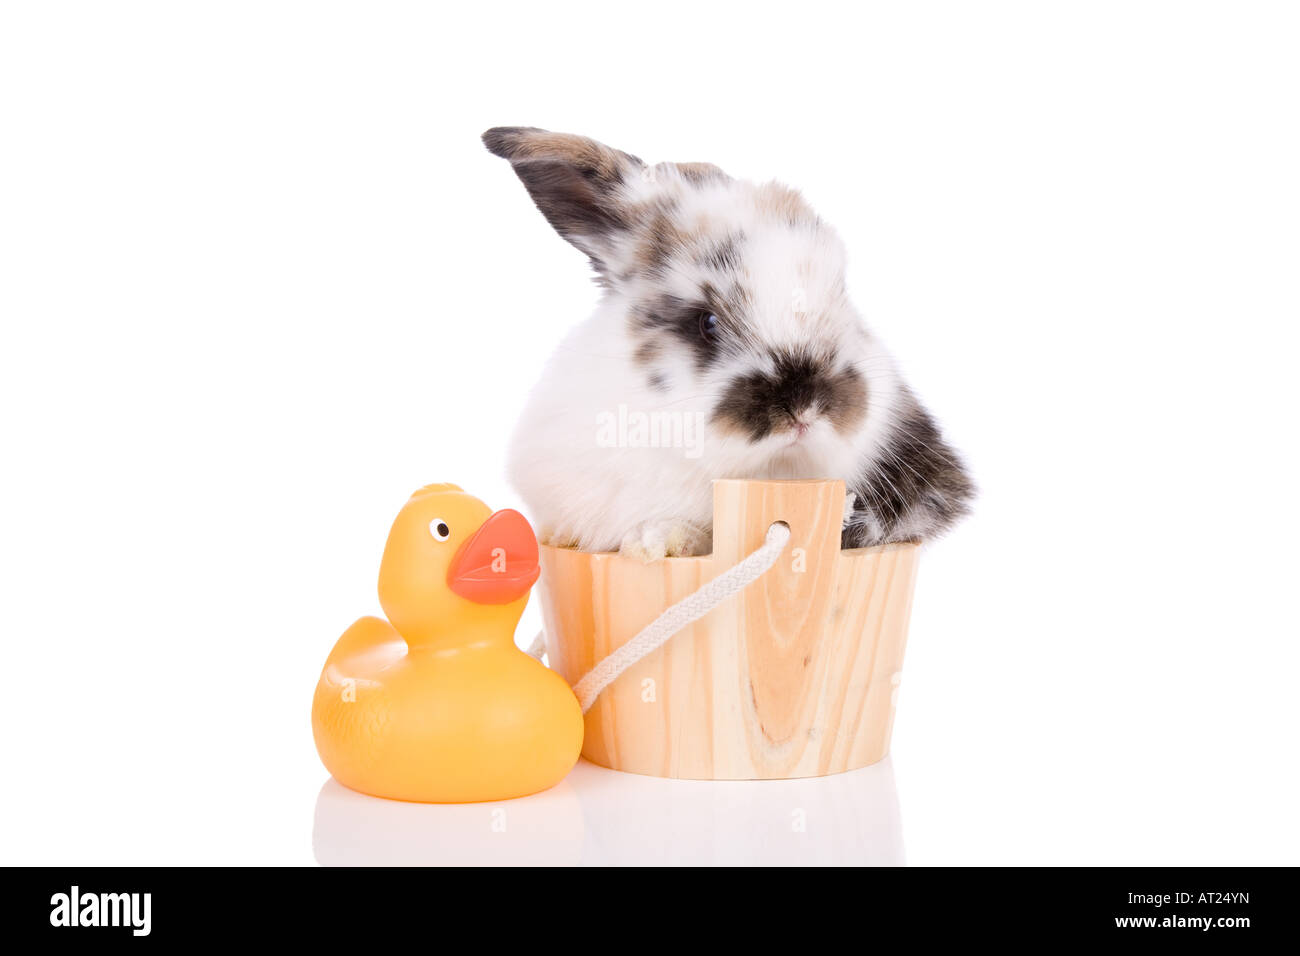 Cute litte bunny dans une baignoire de taille mini Banque D'Images